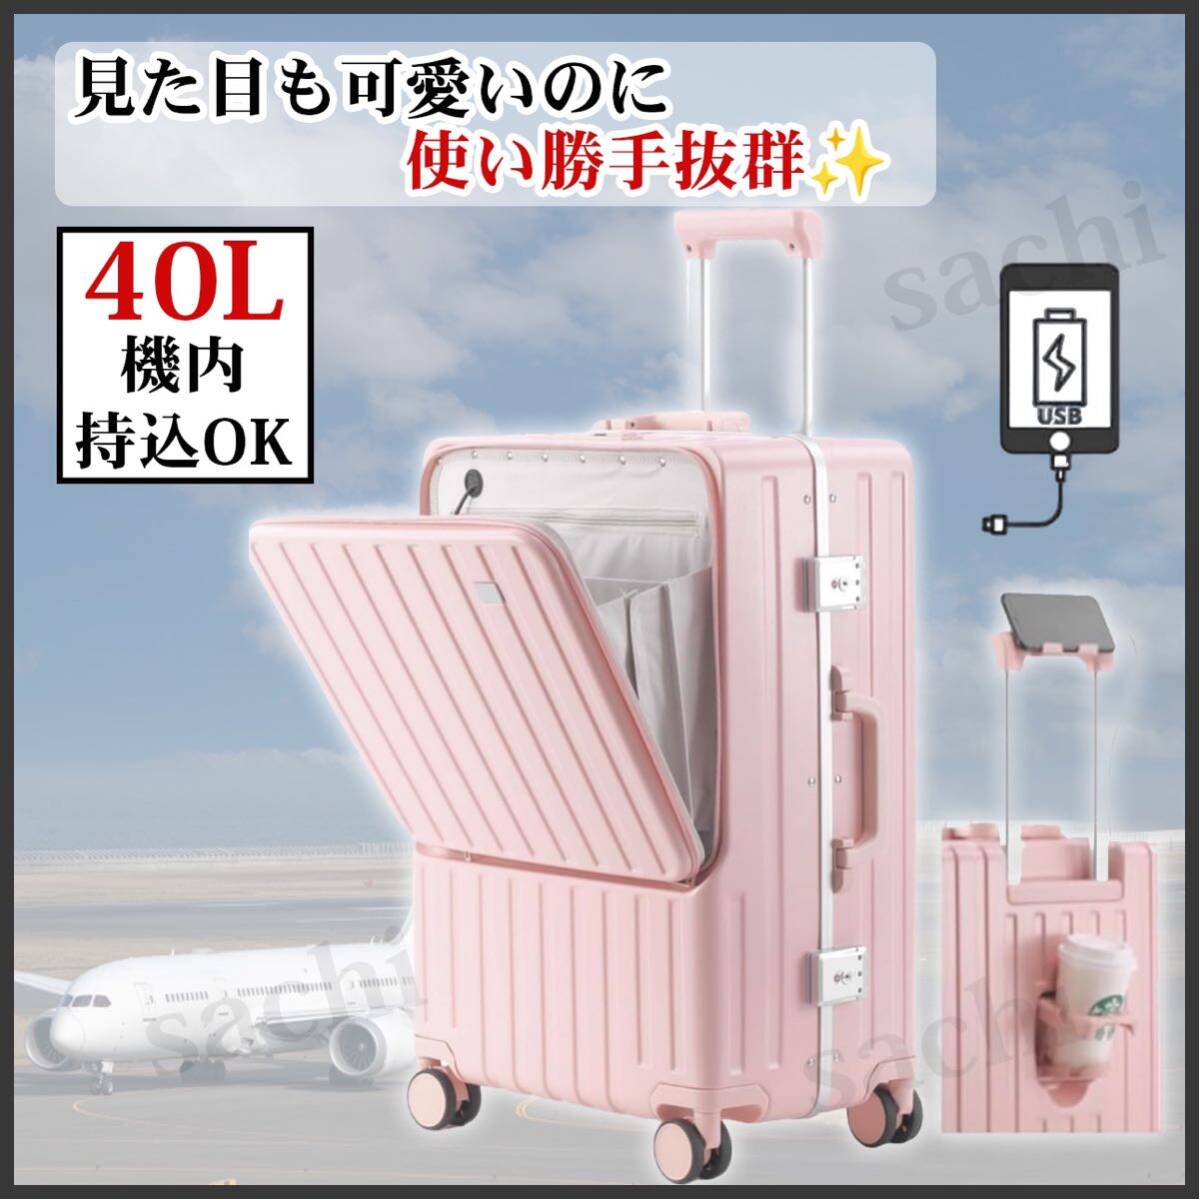 Чемодан для переноса корпуса передняя открытая машина принесла USB -порт S размер 40 л многофункциональную зарядку чемодана розовая